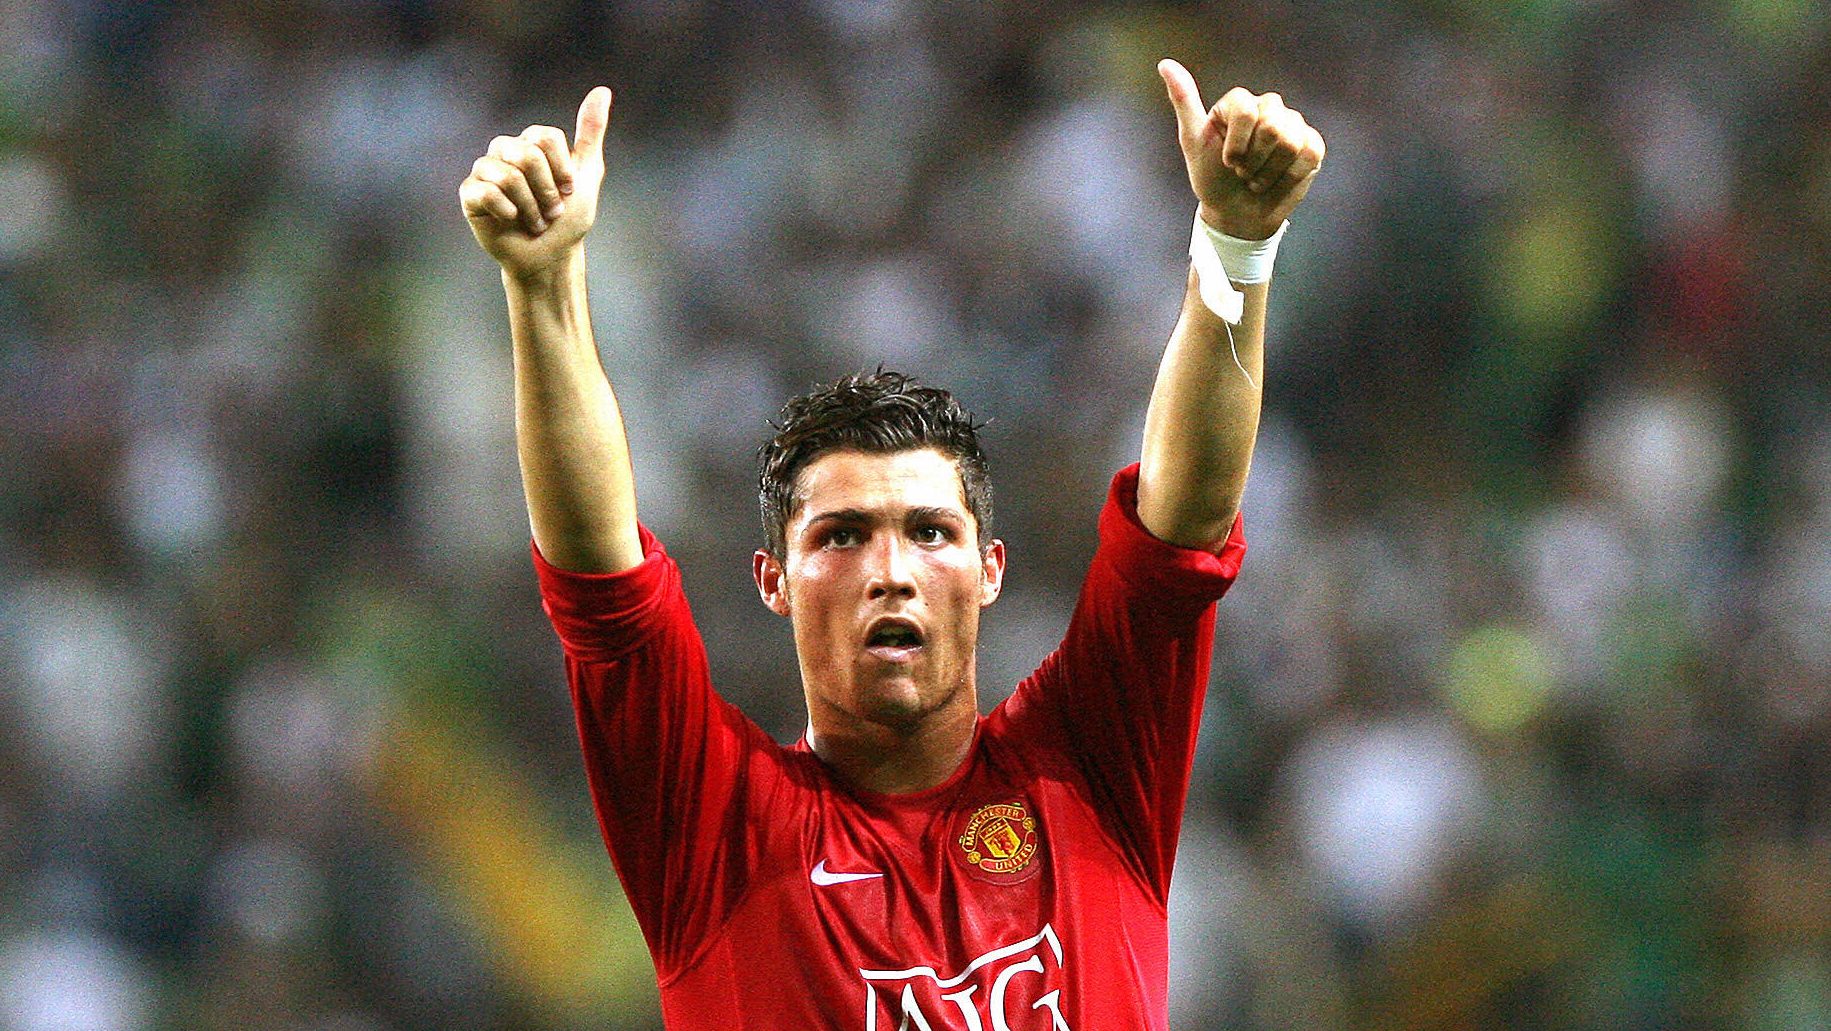 Ronaldo Transfer News: Could Manchester United Be Next? | Heavy.com